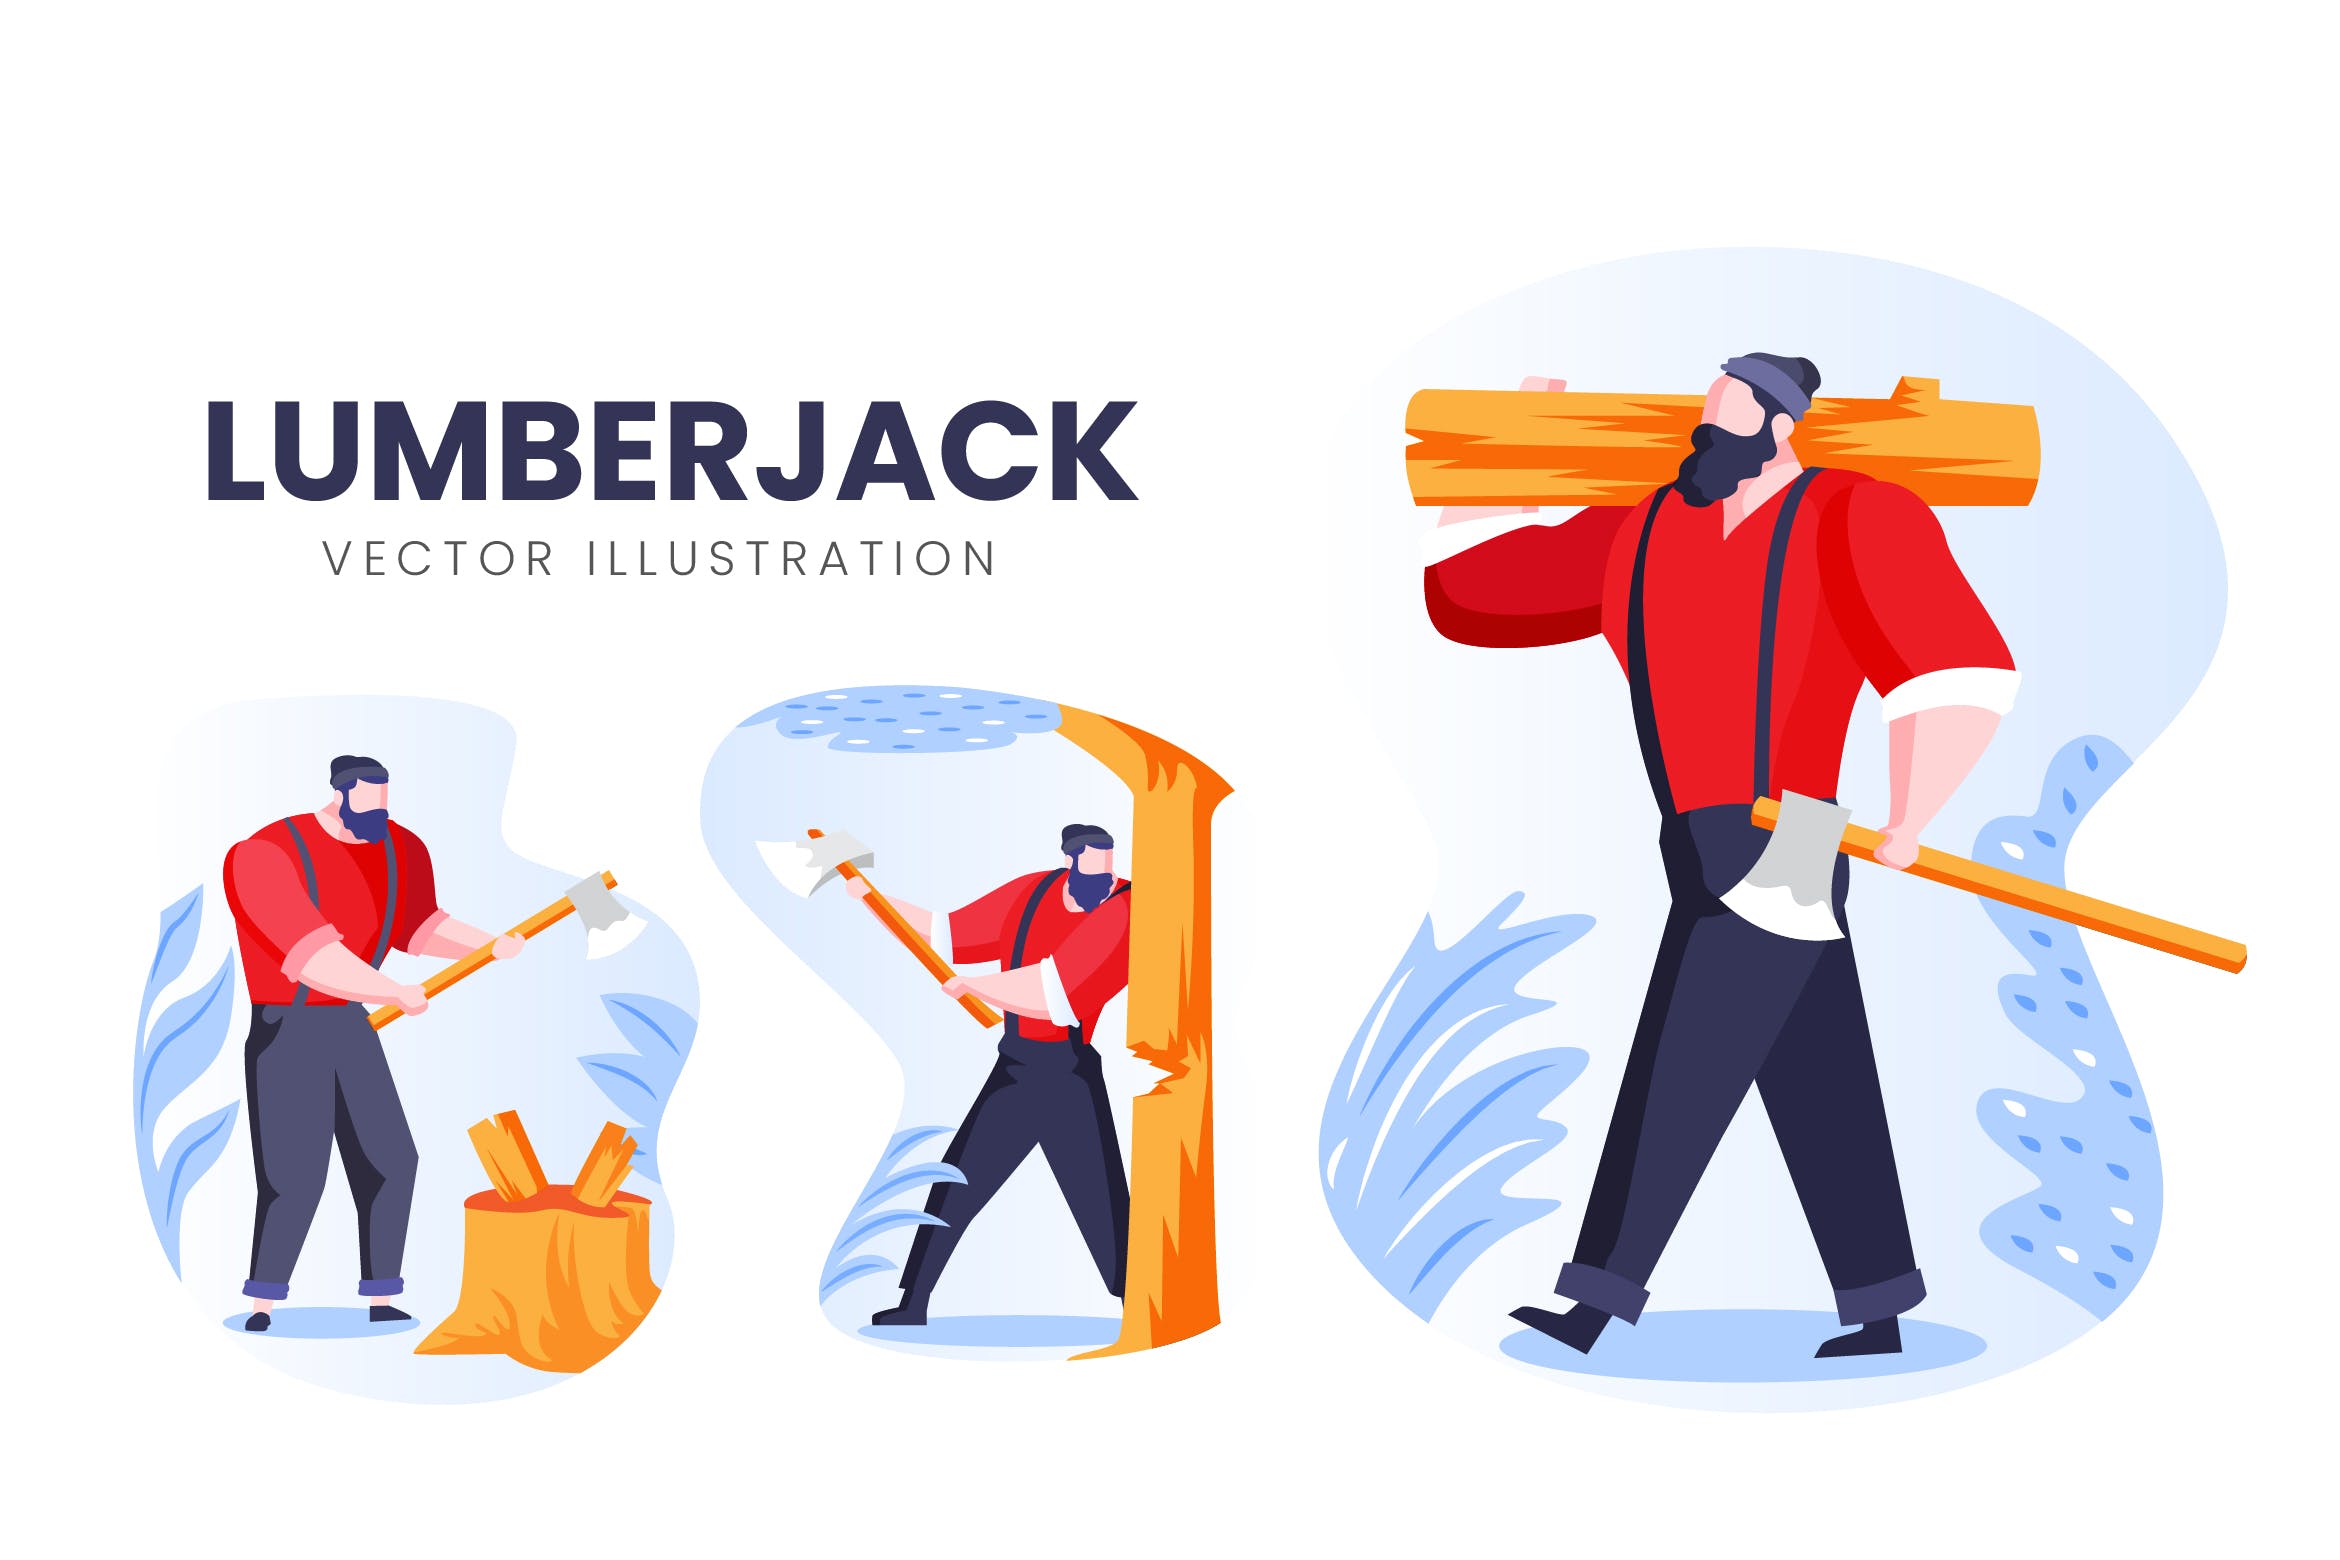 伐木工人物形象素材库精选手绘插画矢量素材 Lumberjack Vector Character Set插图